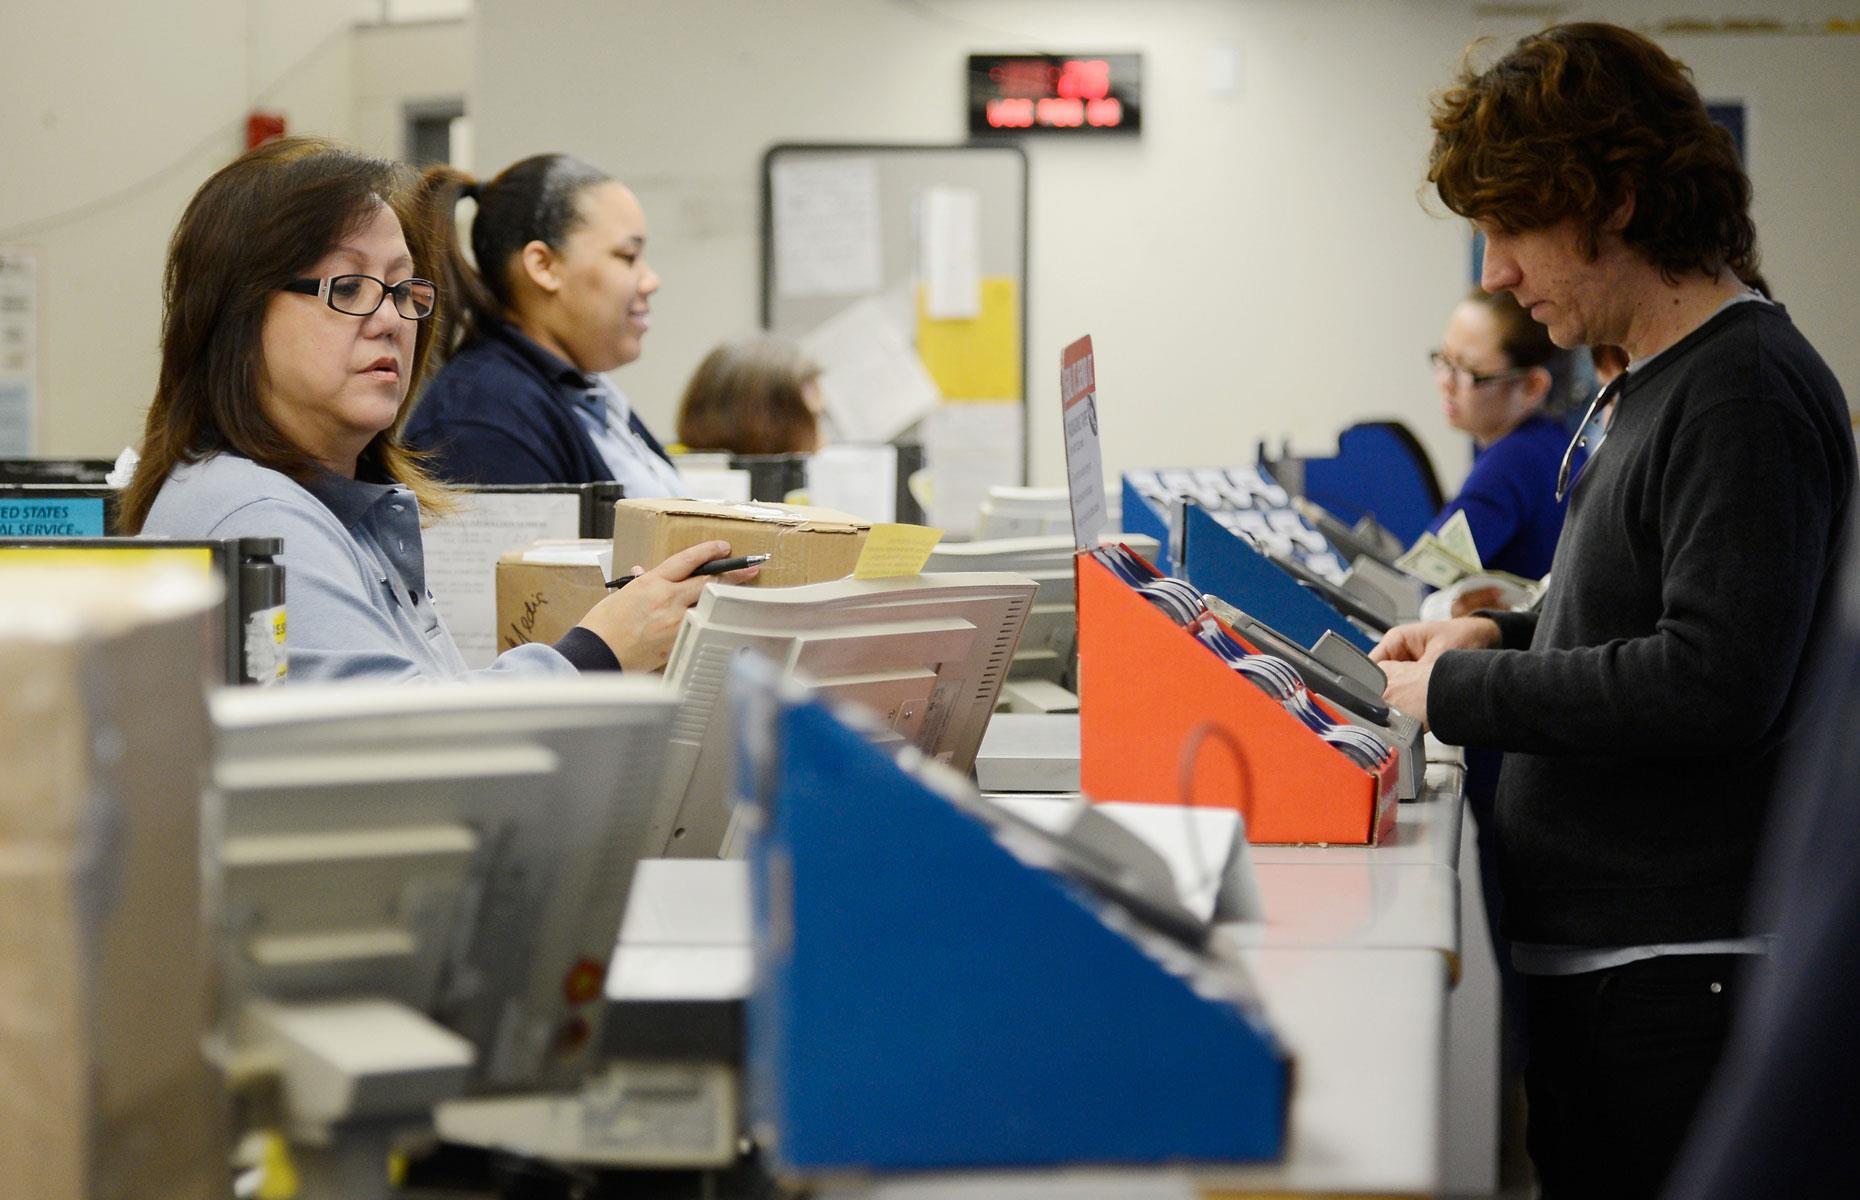 Postal service clerks: 1.7% more